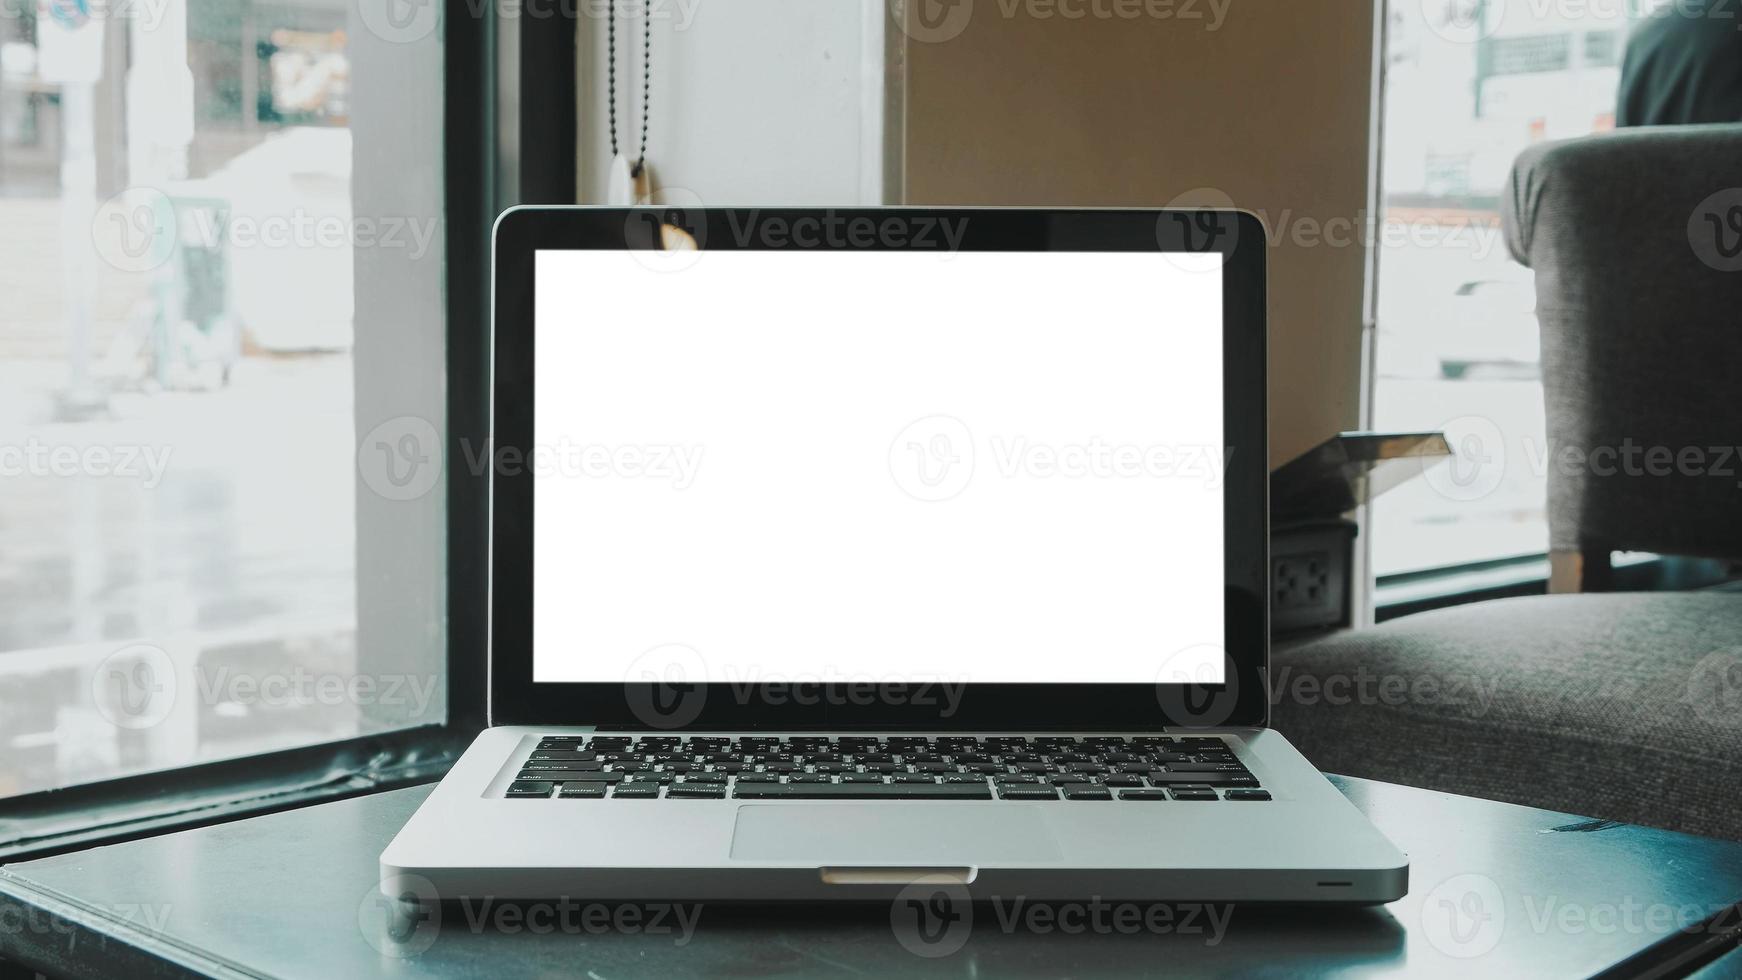 blanco pantalla ordenador portátil computadora conjunto arriba para trabajo en blanco de madera escritorio, Bosquejo, vacío pantalla, blanco pantalla para producto mostrar. foto